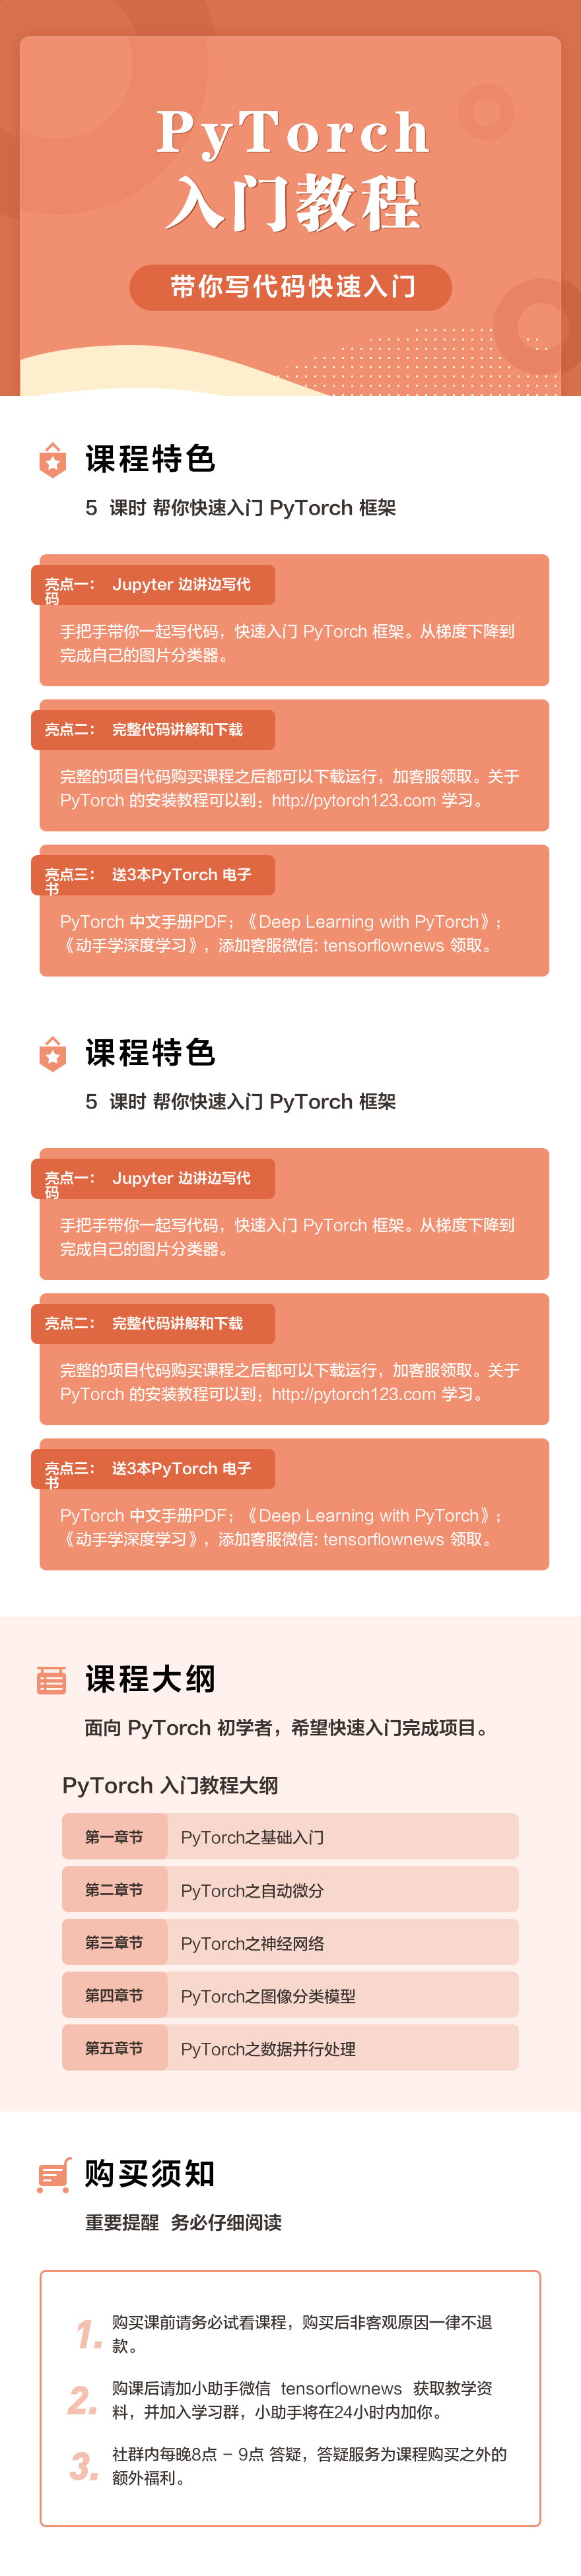 PyTorch 60 分钟入门视频教程- Jupyter 下载